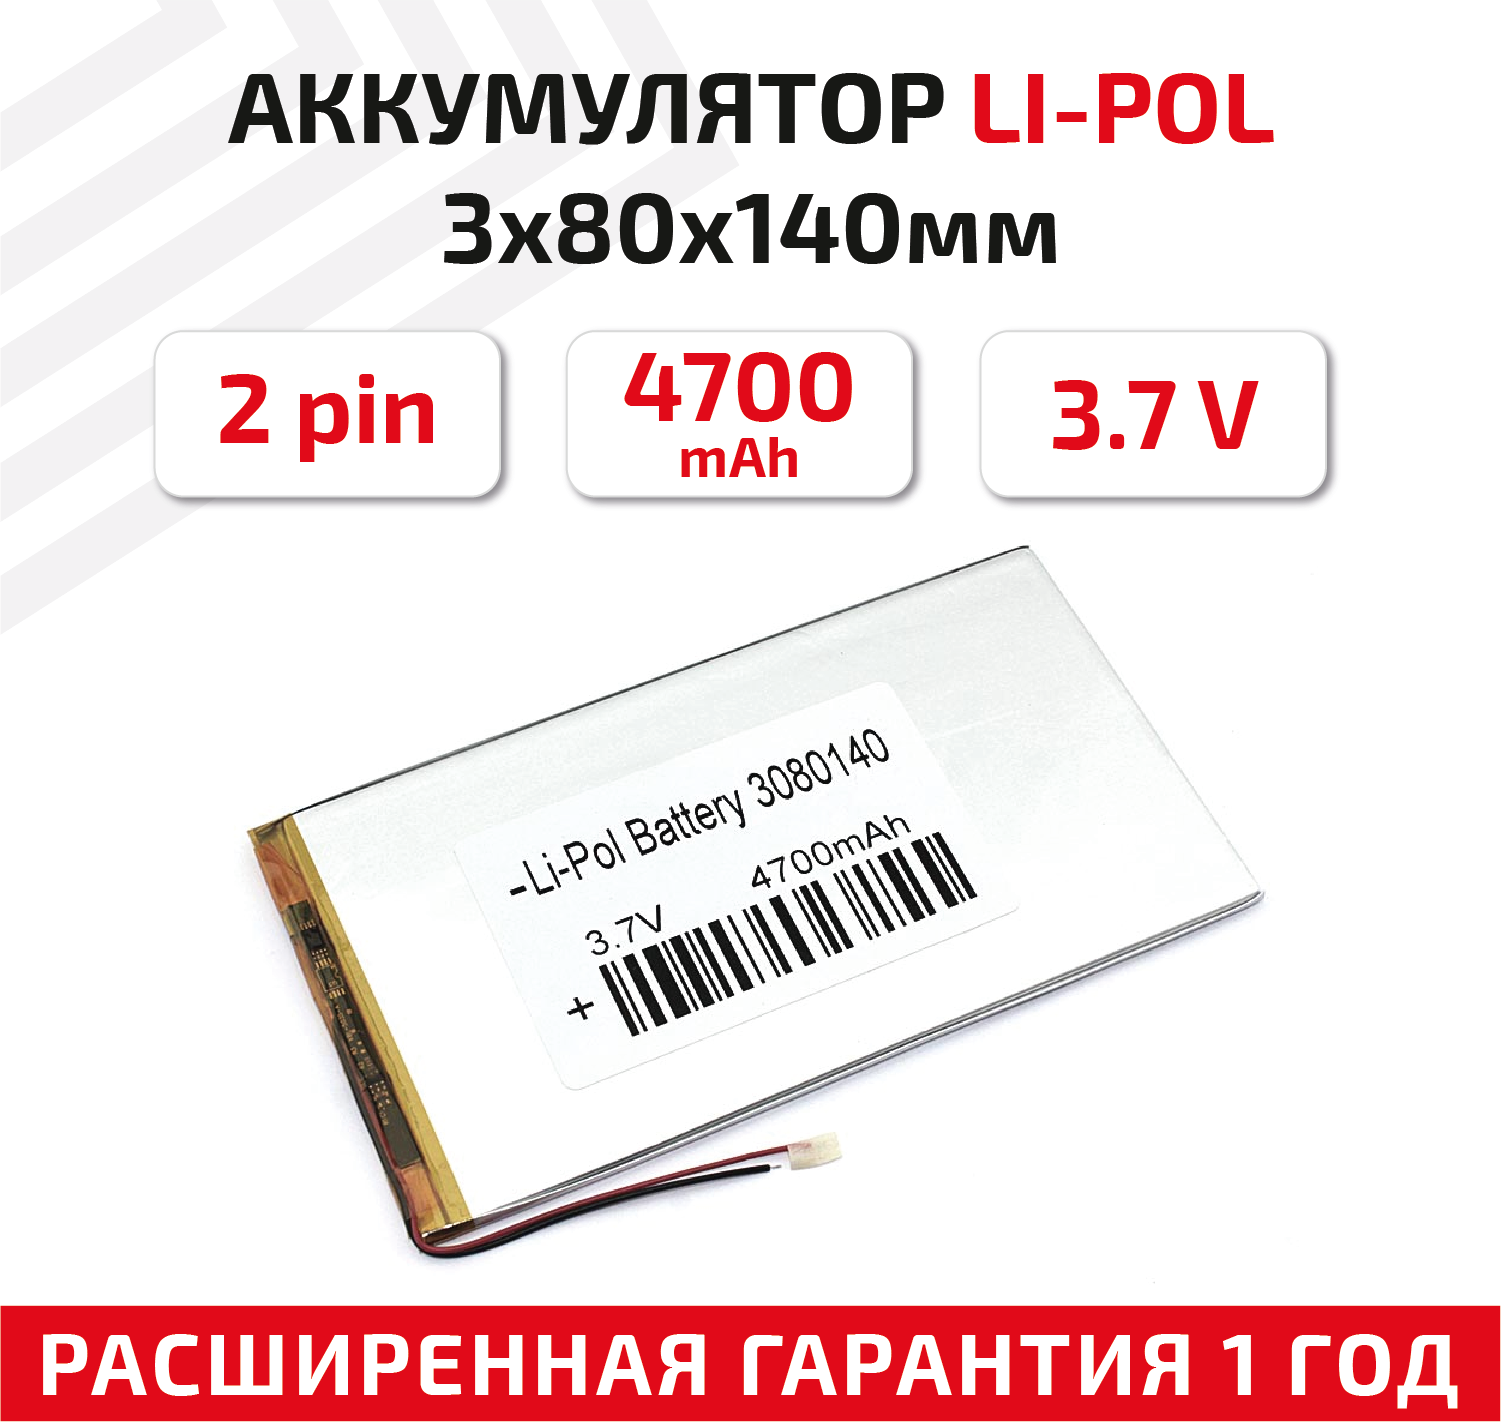 Универсальный аккумулятор (АКБ) для планшета, видеорегистратора и др, 3х80х140мм, 4700мАч, 3.7В, Li-Pol, 2pin (на 2 провода)